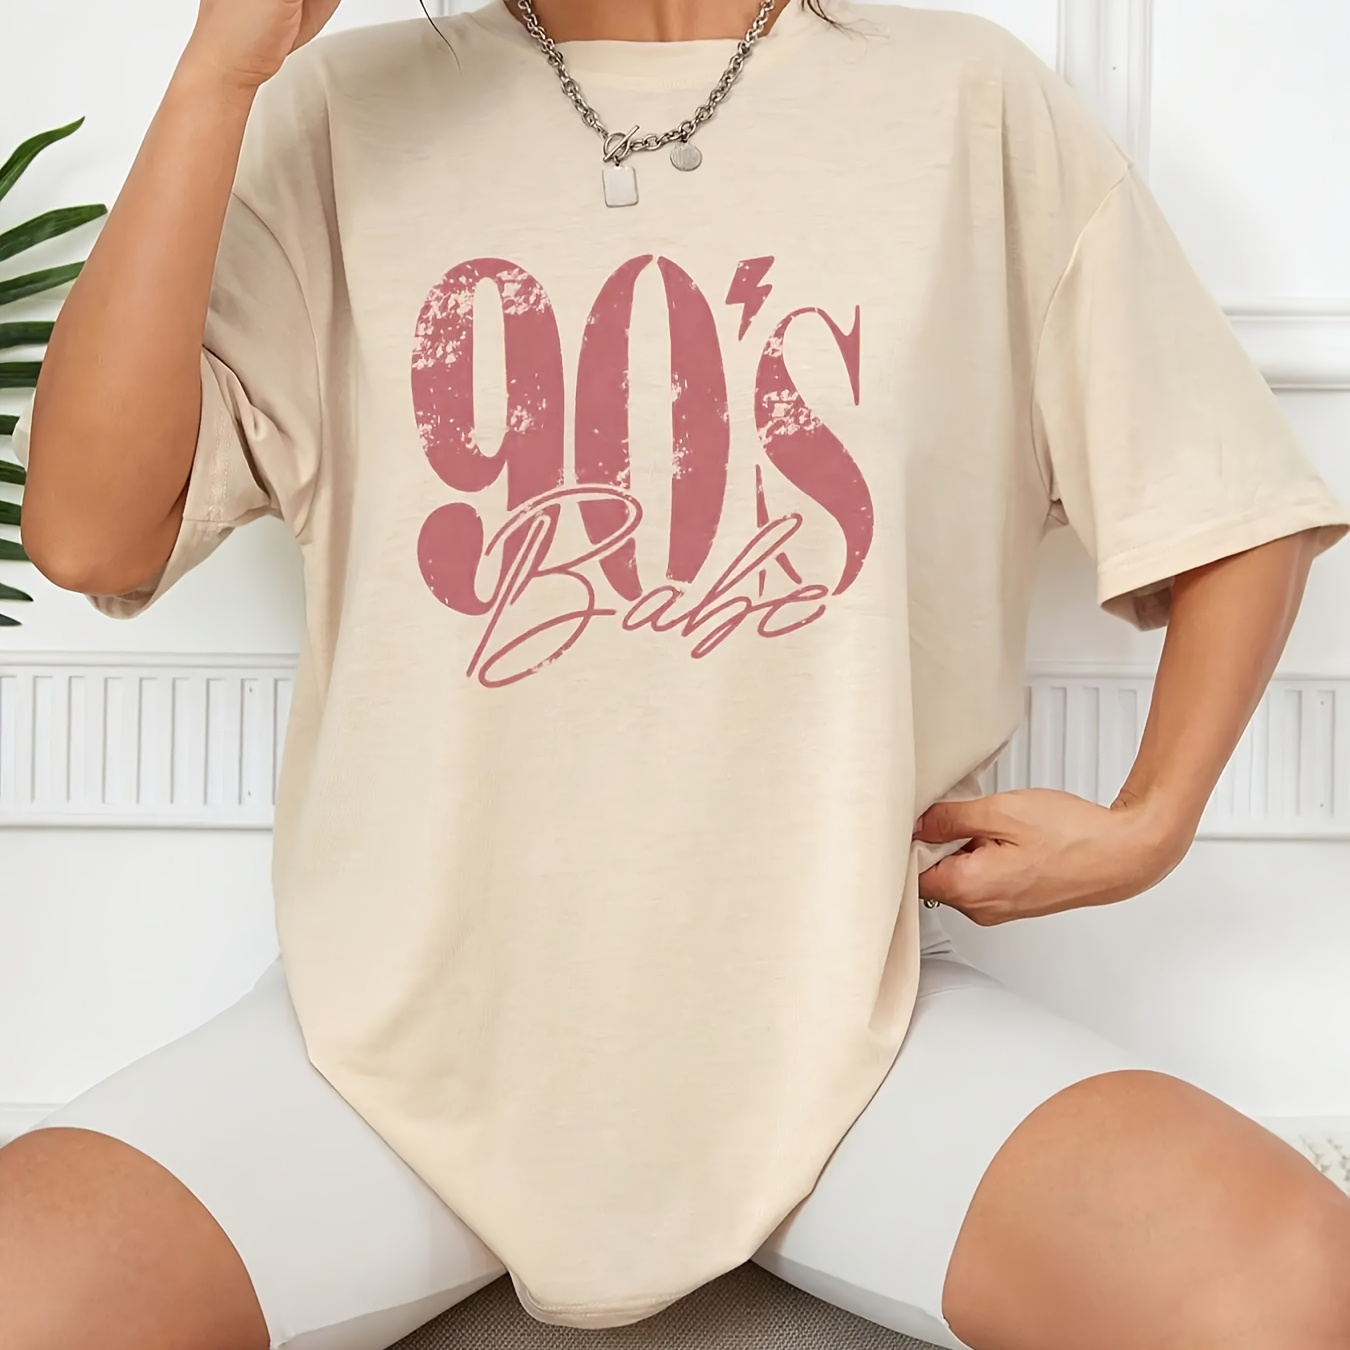 

Number & Letter Print Vintage T-shirt, Crew Neck Drop Shoulder Top For Spring & Summer, Women's Clothing